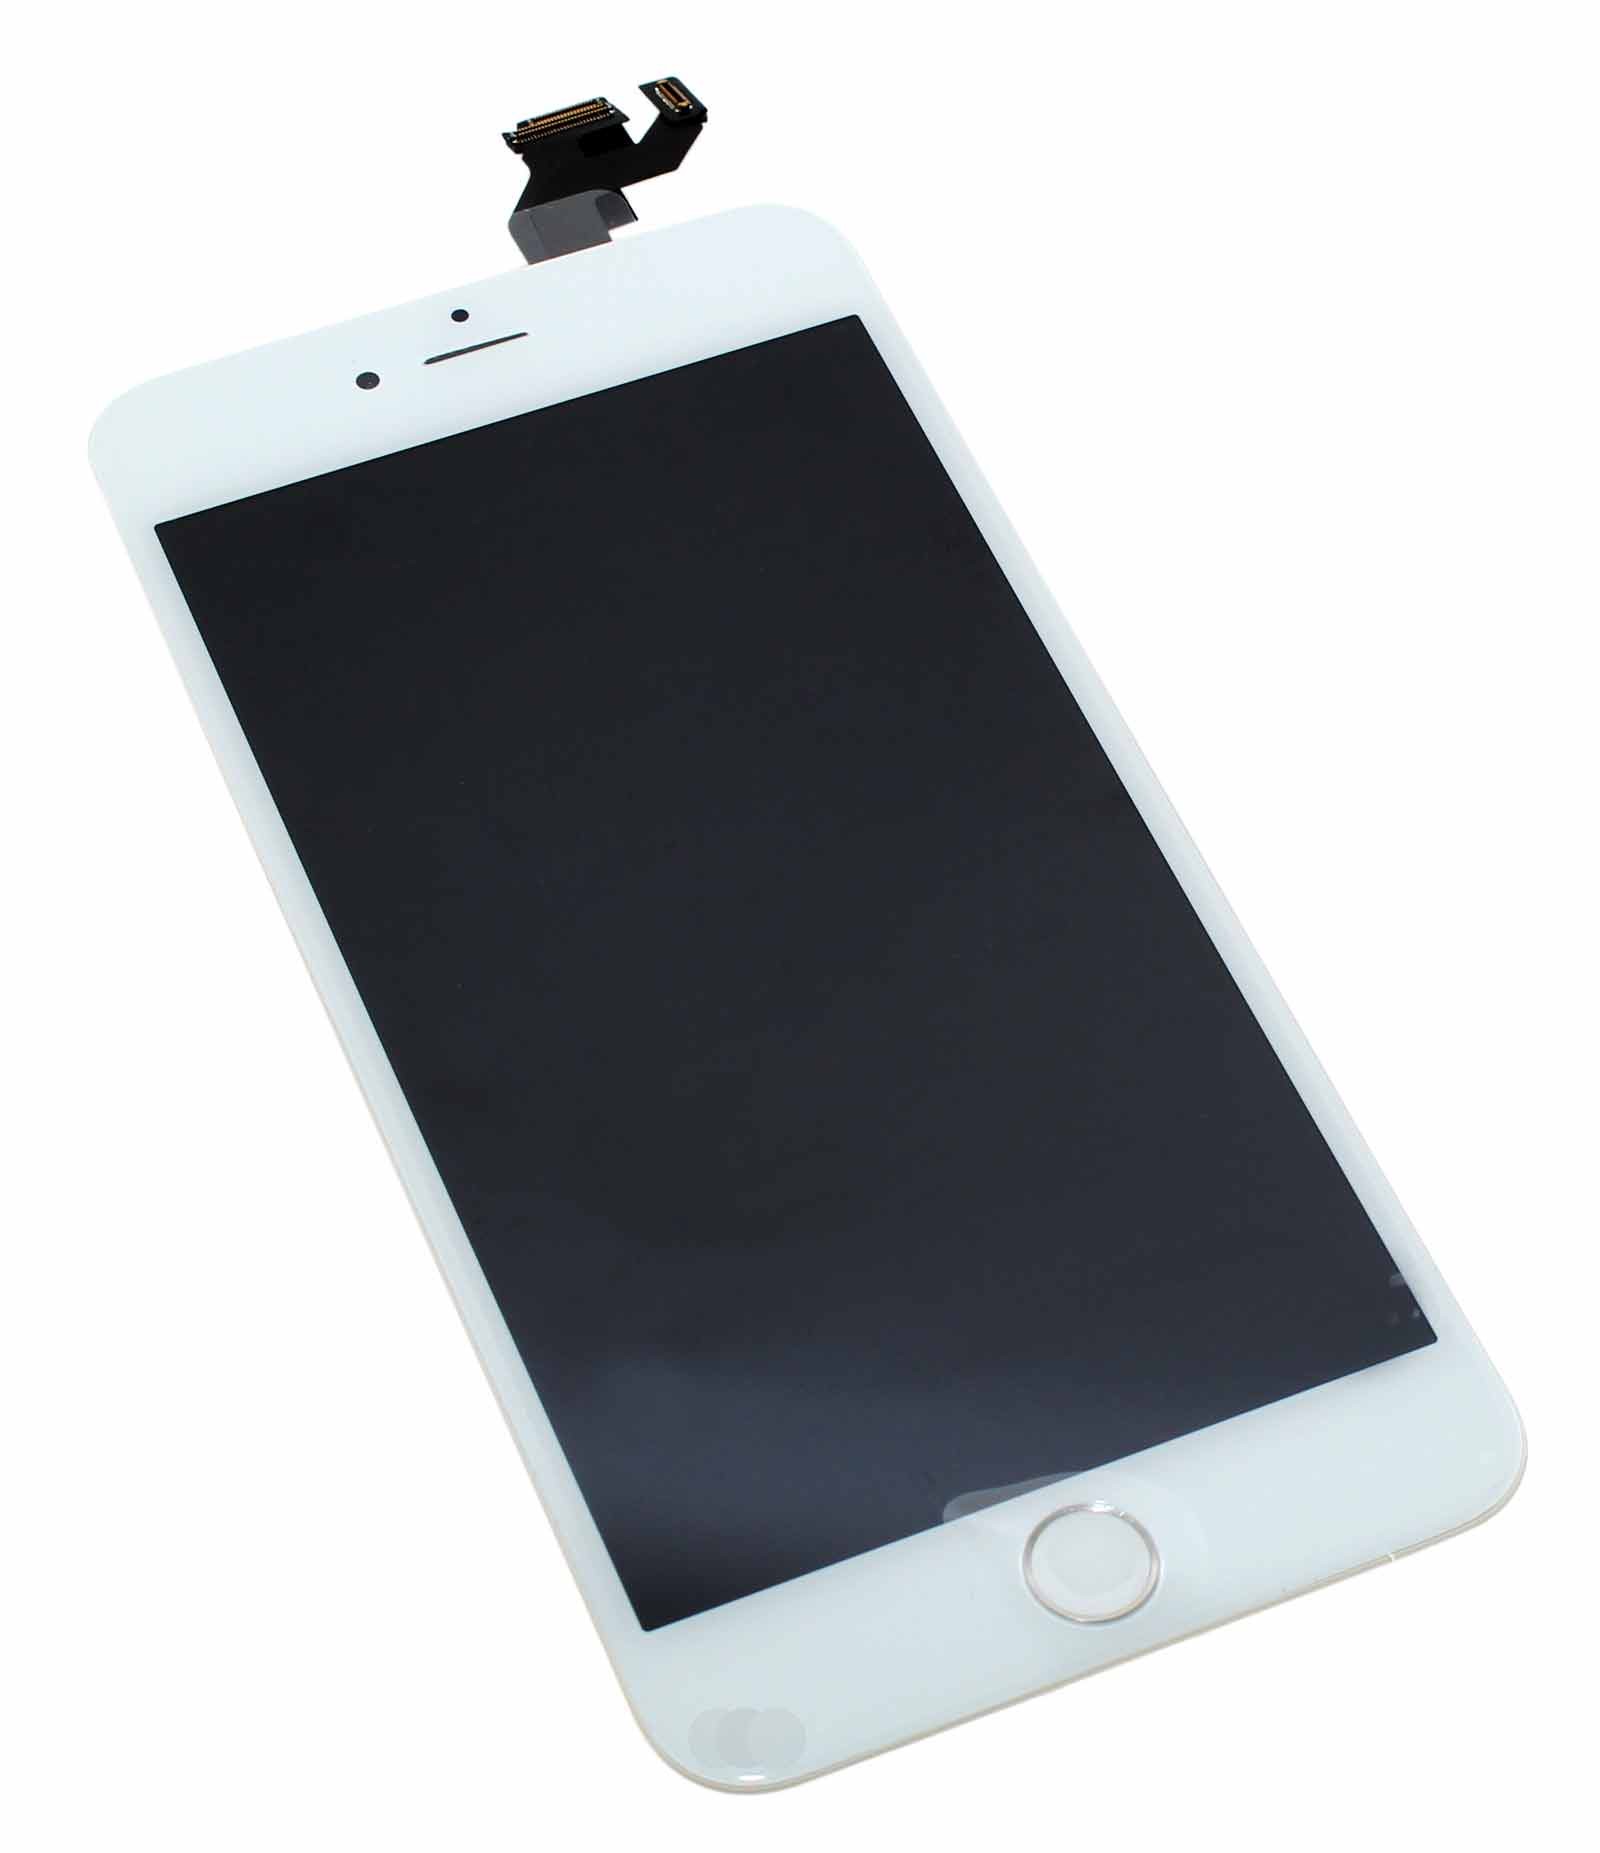 Hochwertiges, vormontiertes Display für Apple iPhone 6s Plus (A1634, A1687, A1699) in der Farbe weiß